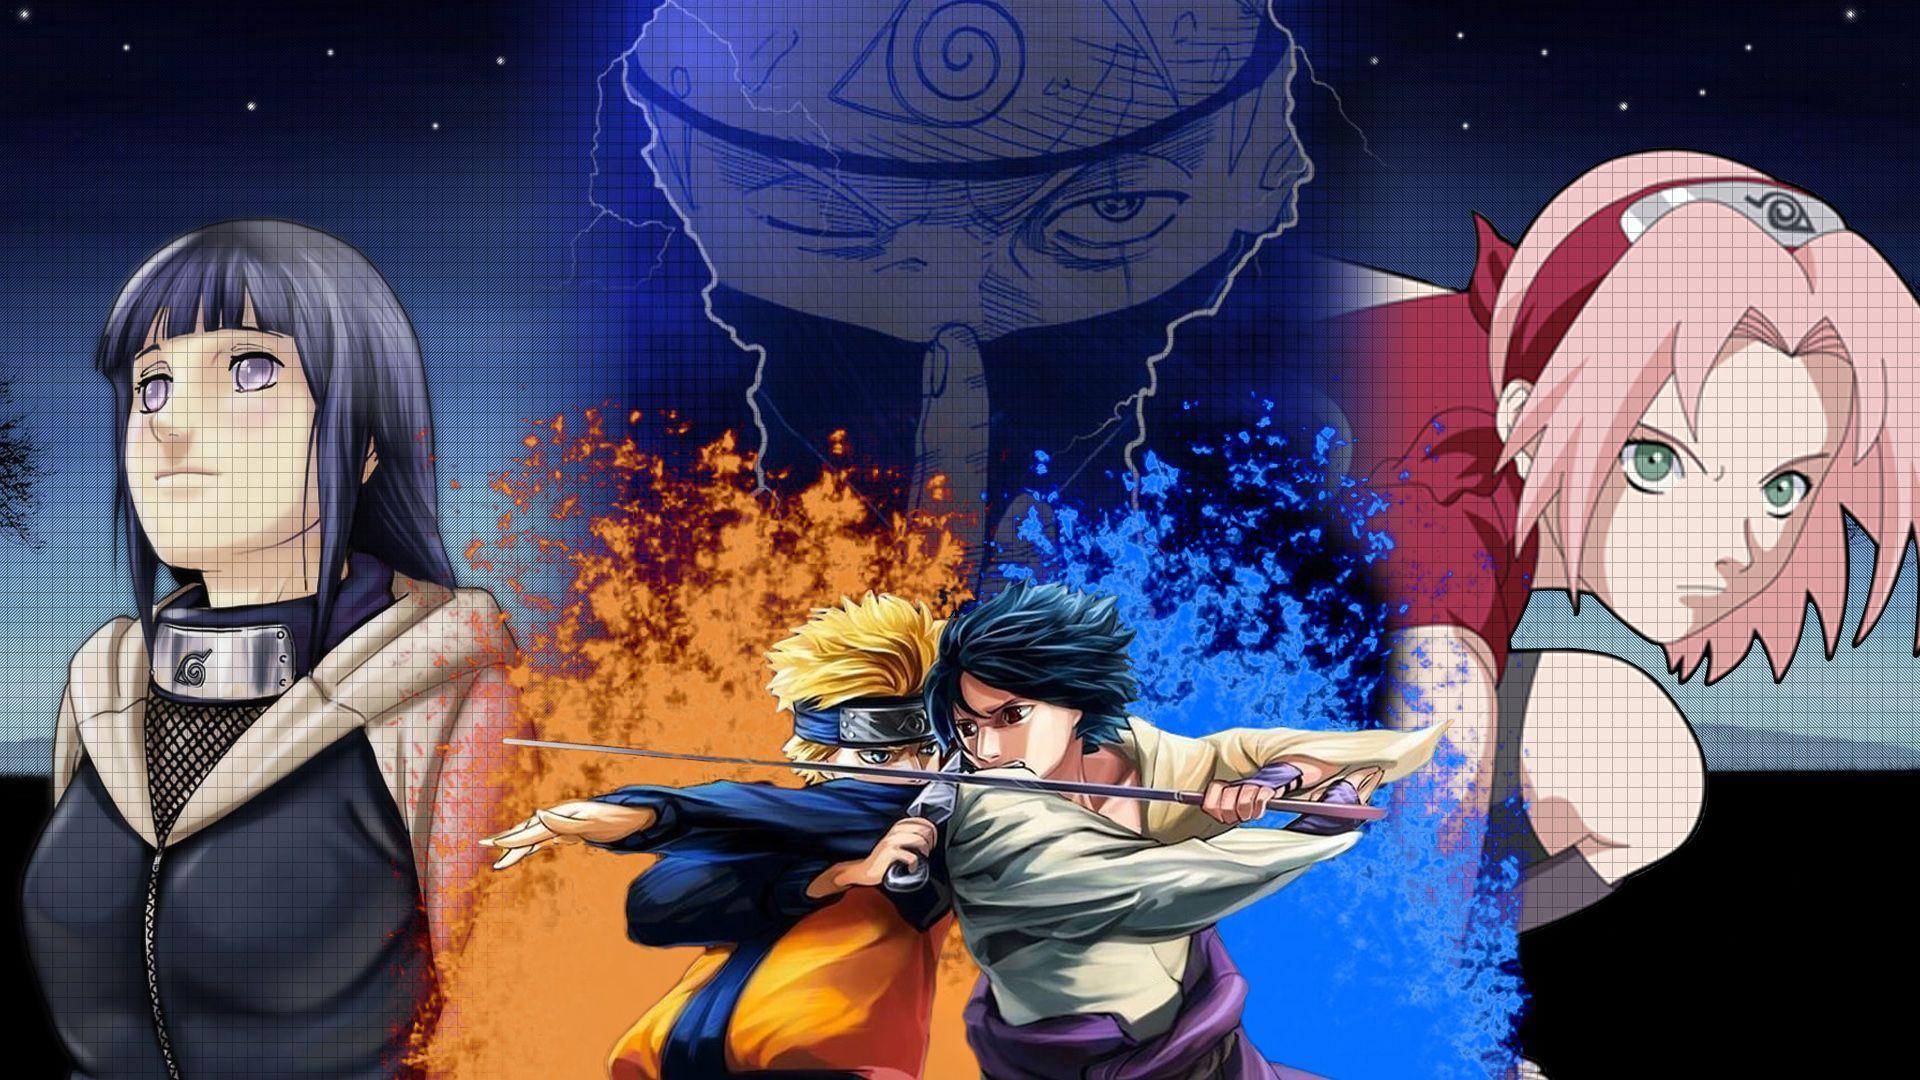 Naruto Hinata Sakura And Sasuke Wallpapers Top Free Naruto Hinata Sakura And Sasuke Backgrounds Wallpaperaccess